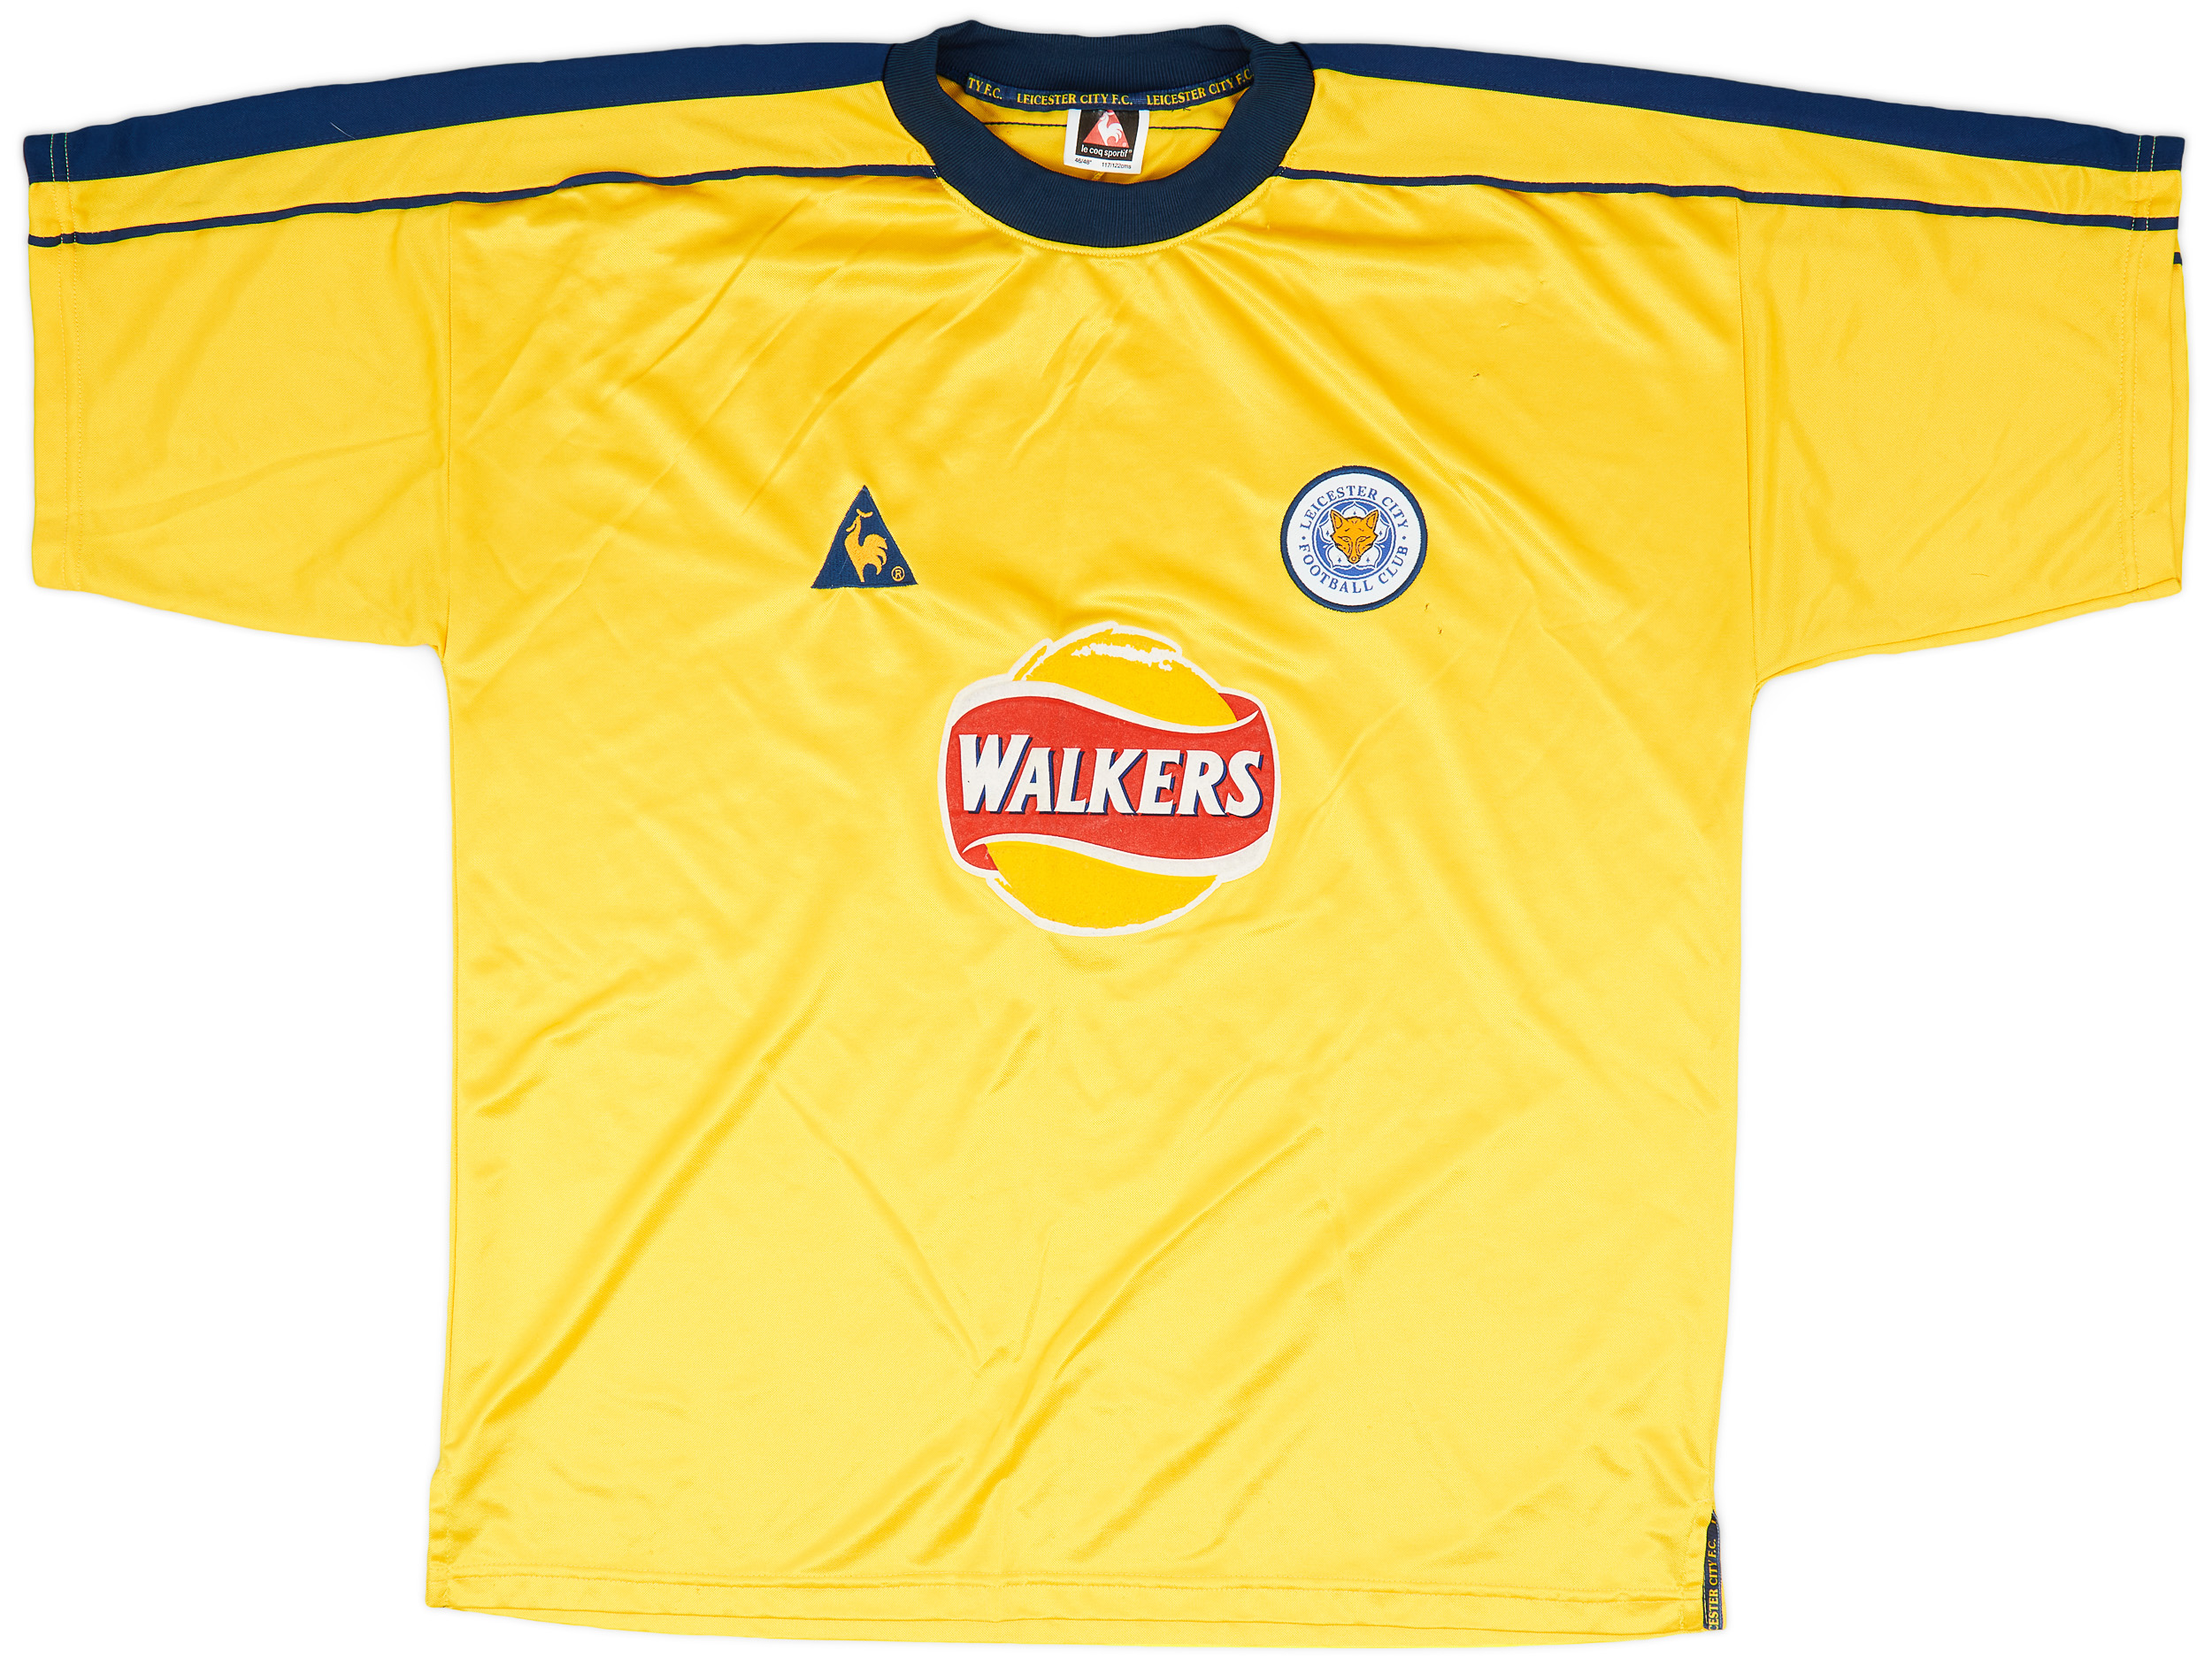 1999-01 Leicester Third Shirt - 5/10 - ()